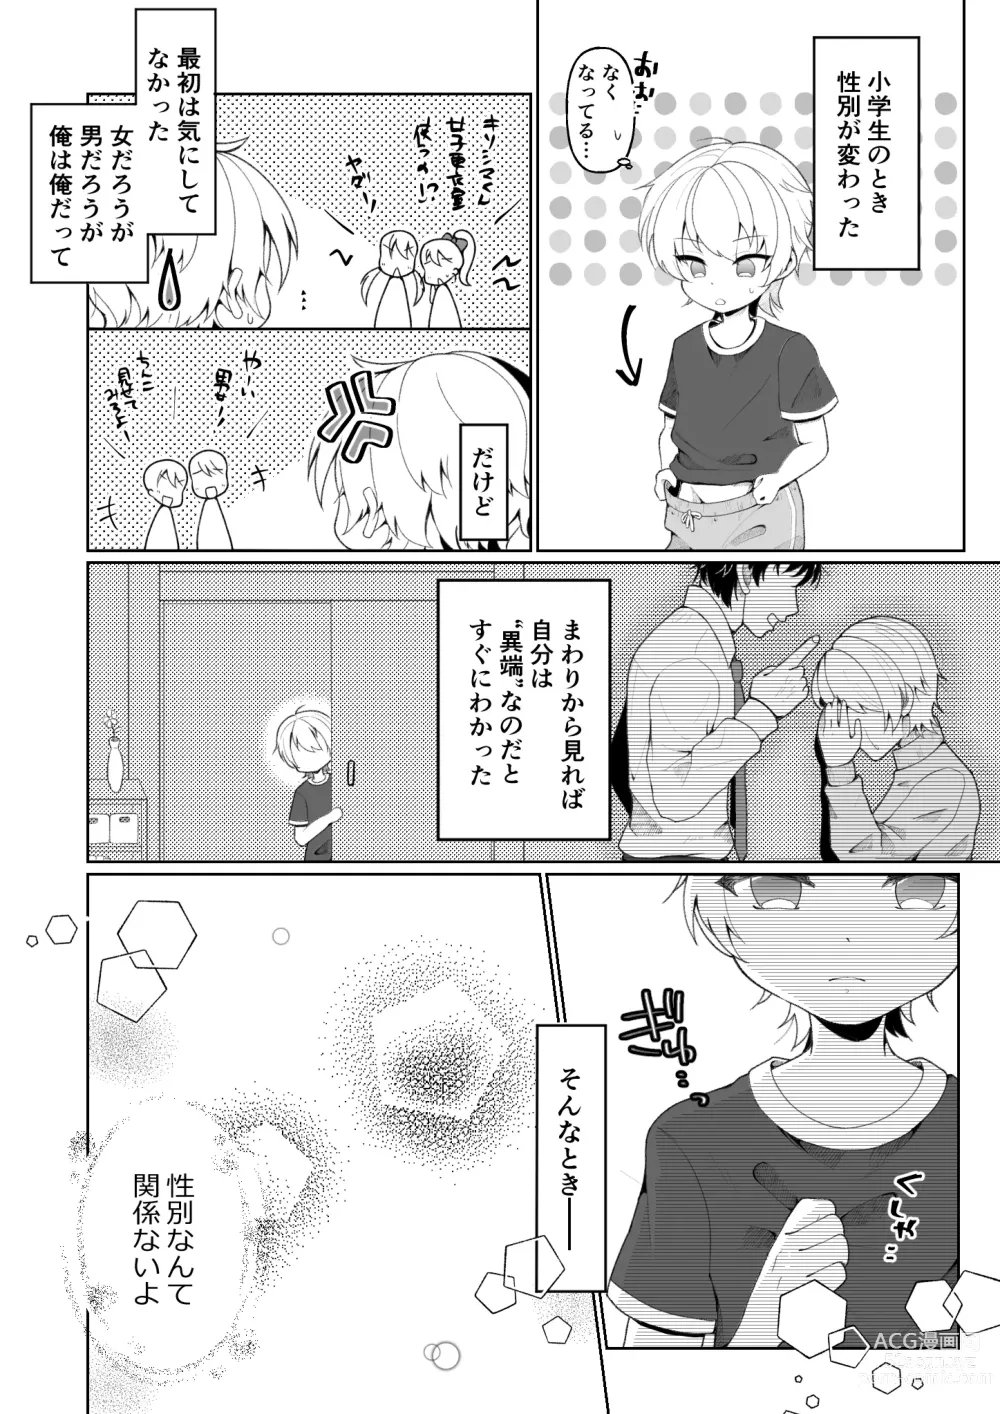 Page 2 of doujinshi TS shita Ore no Shinyuu ga Yandere ni Naru made